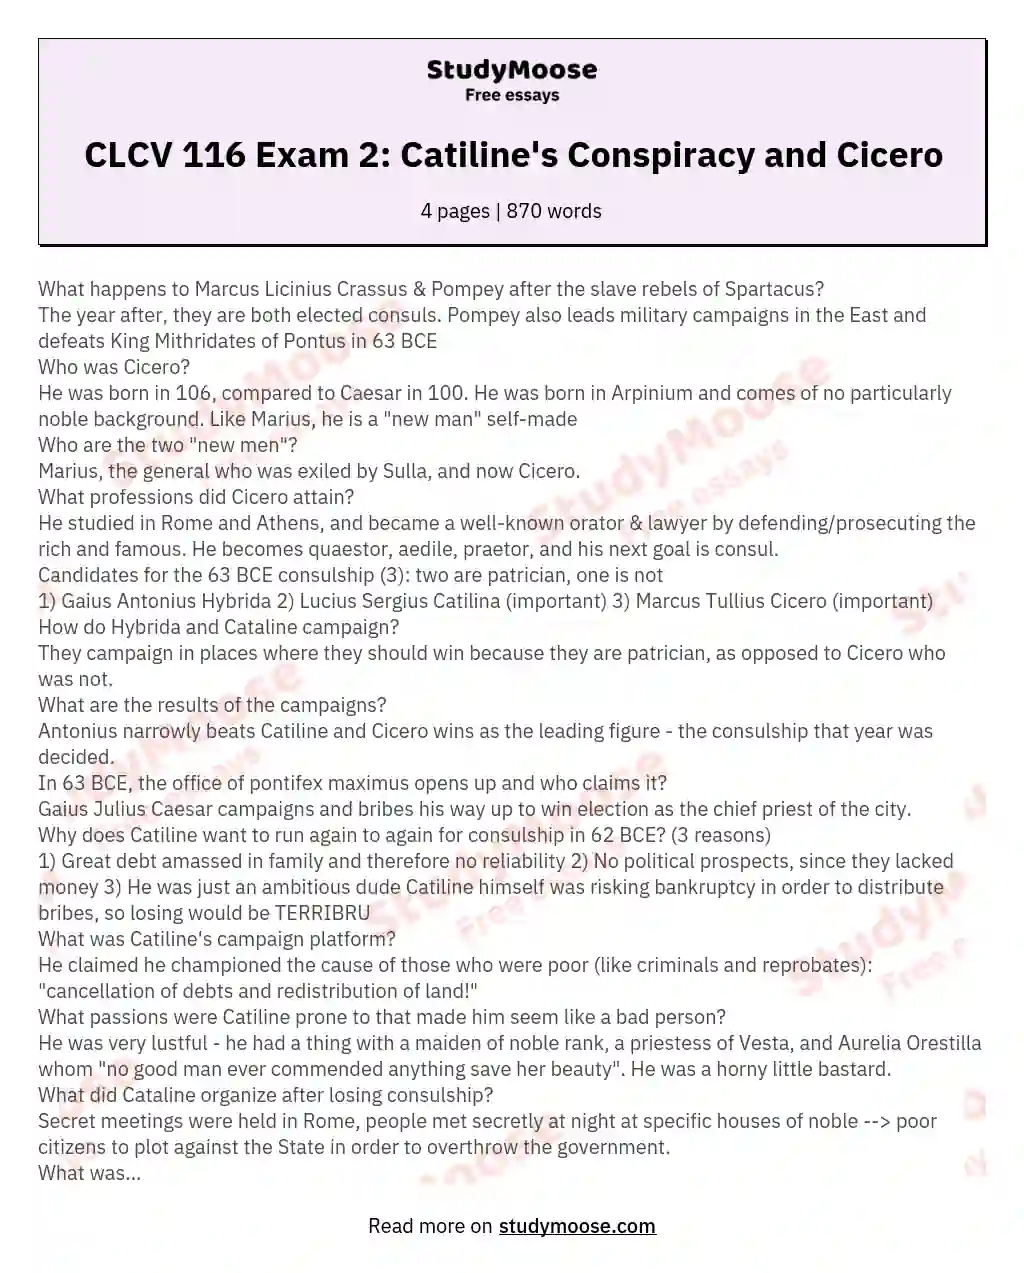 CLCV 116 Exam 2: Catiline's Conspiracy and Cicero